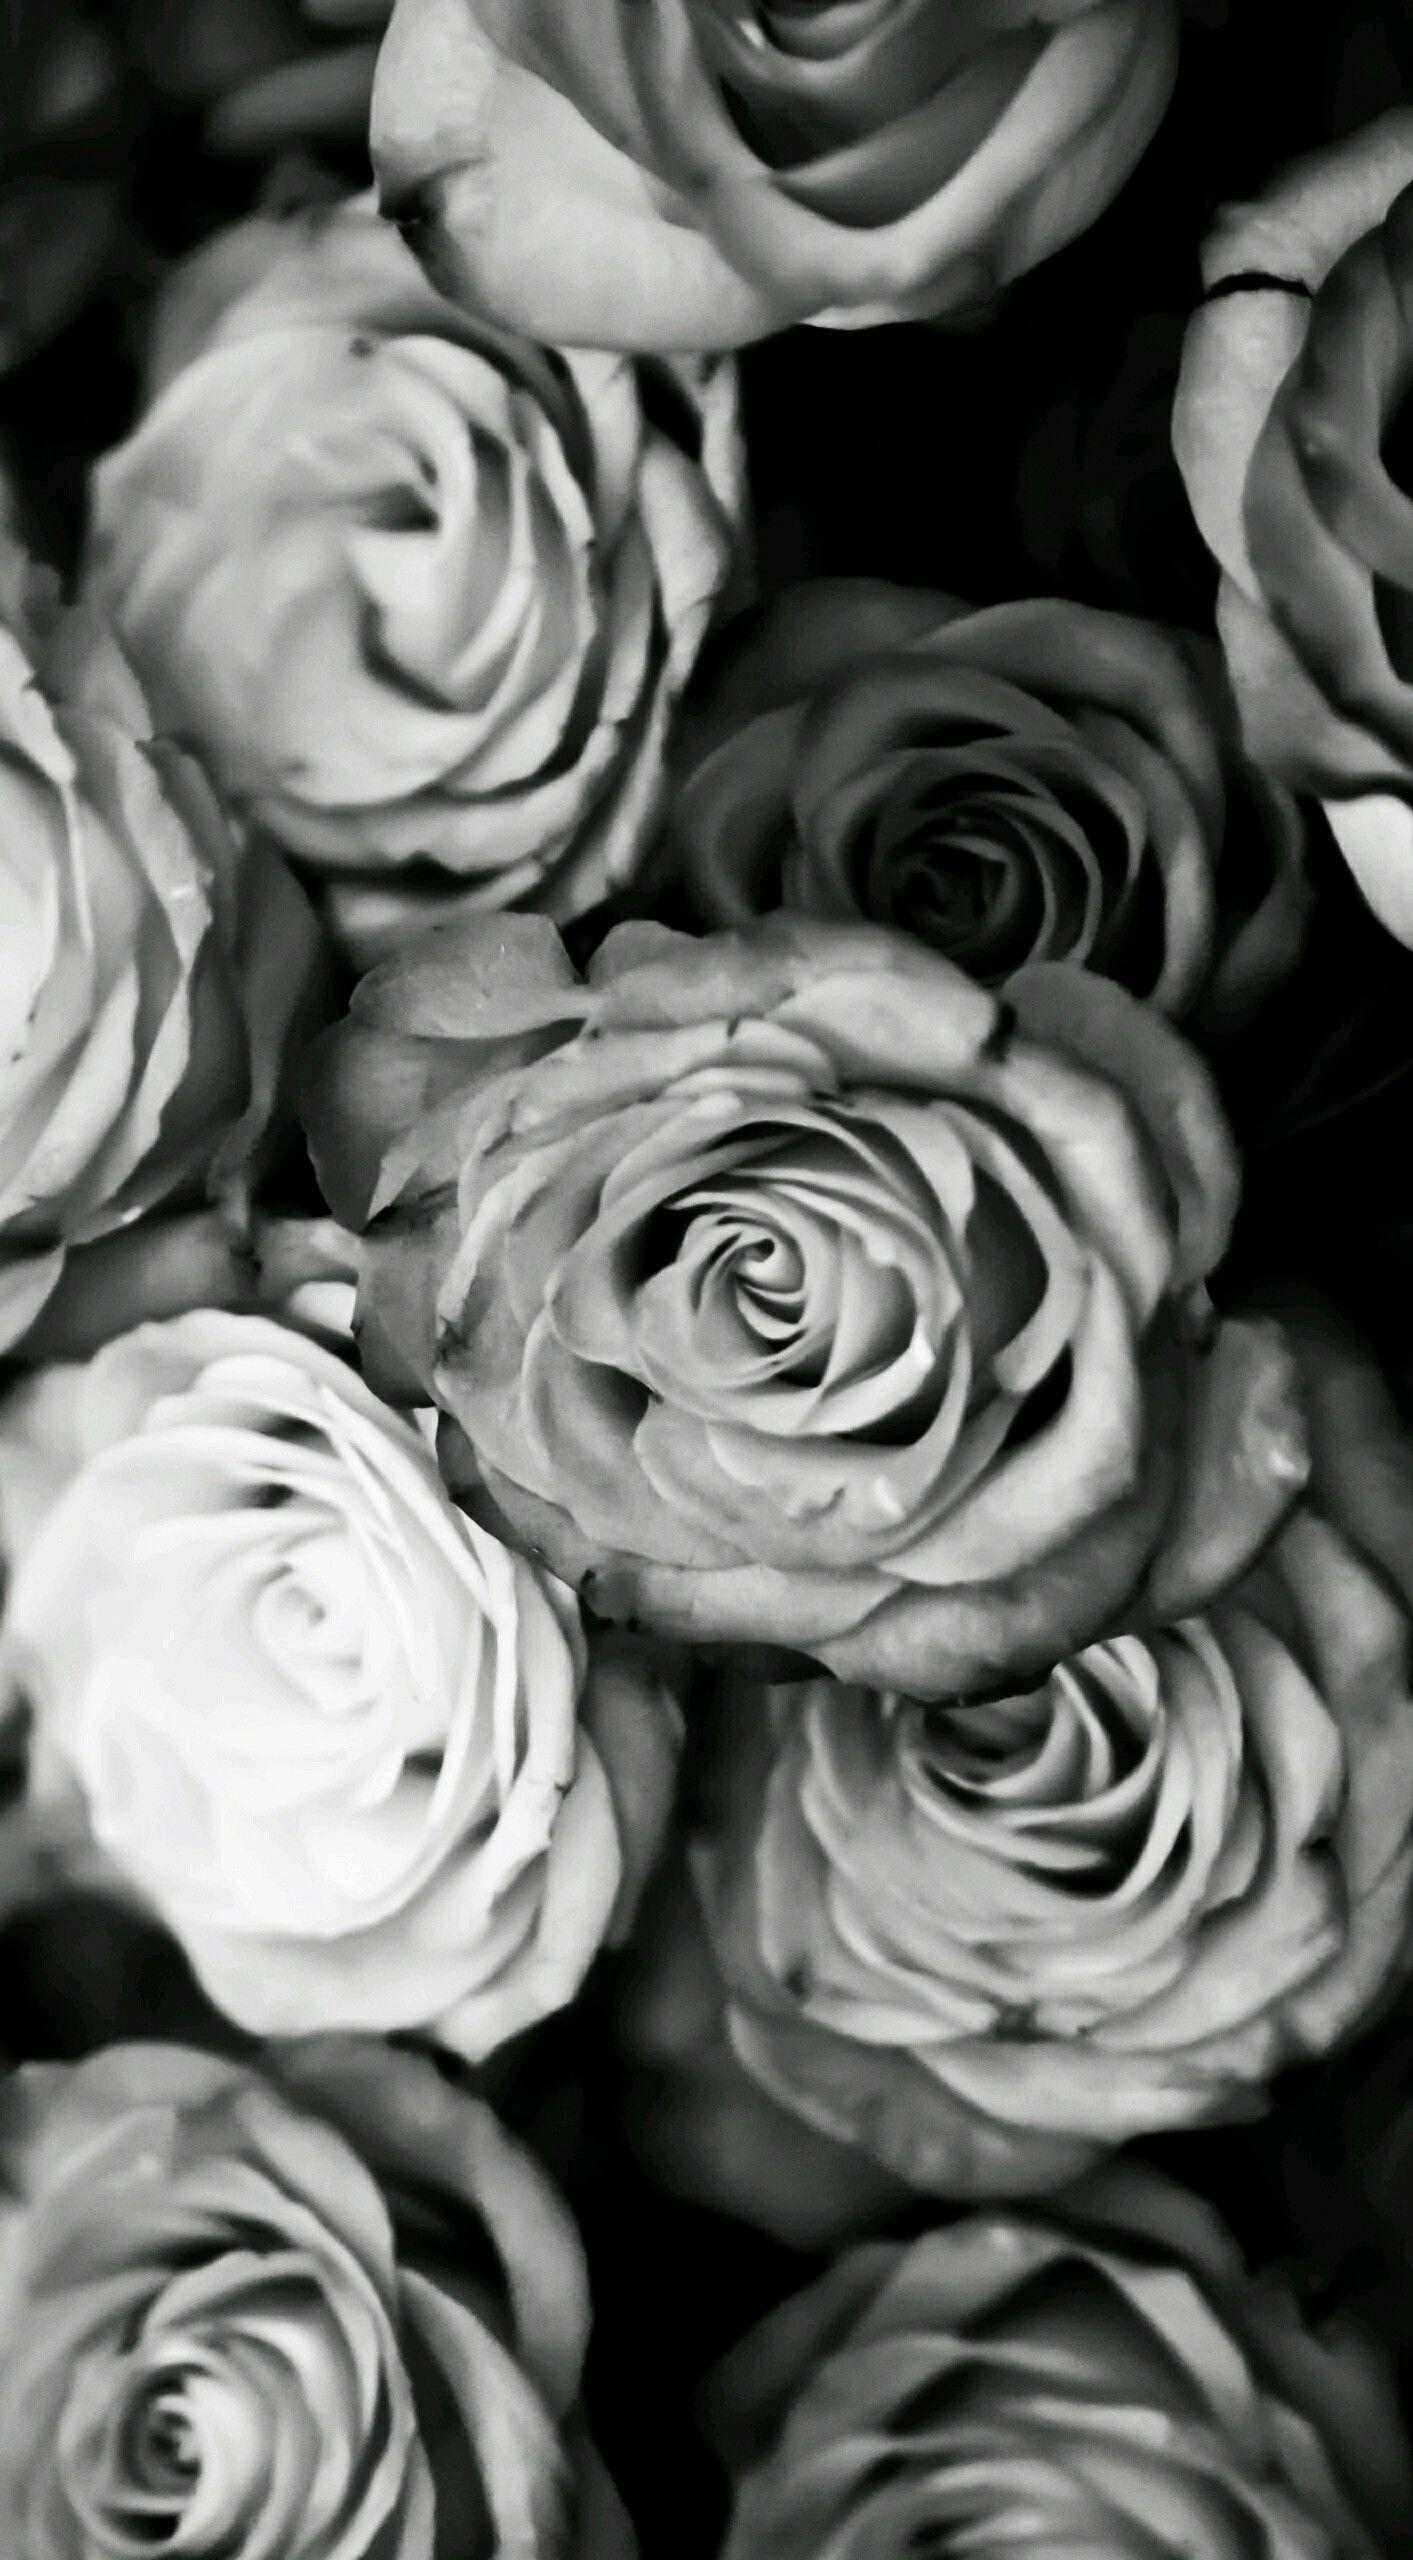 WALLPAPERS. White roses wallpaper, White roses